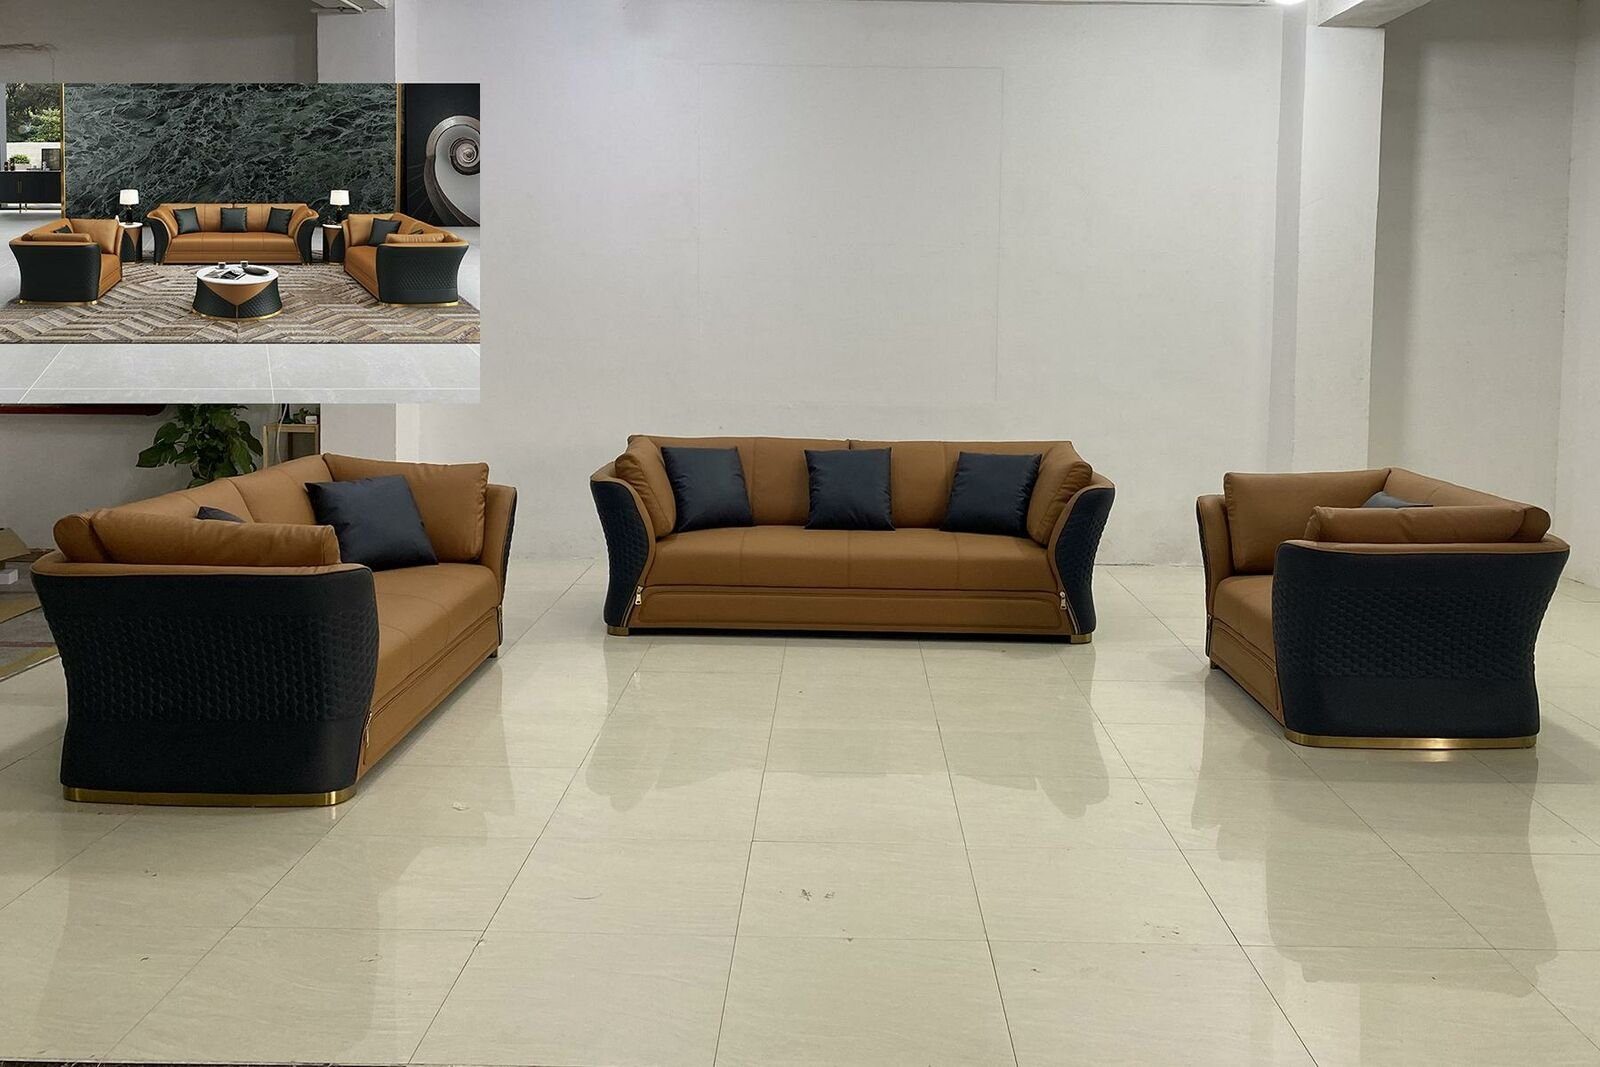 JVmoebel Sofa Luxus Sitzgarnitur 3+2+1 Sitzer Polstermöbel Leder Neu, Made in Europe Schwarz/Braun